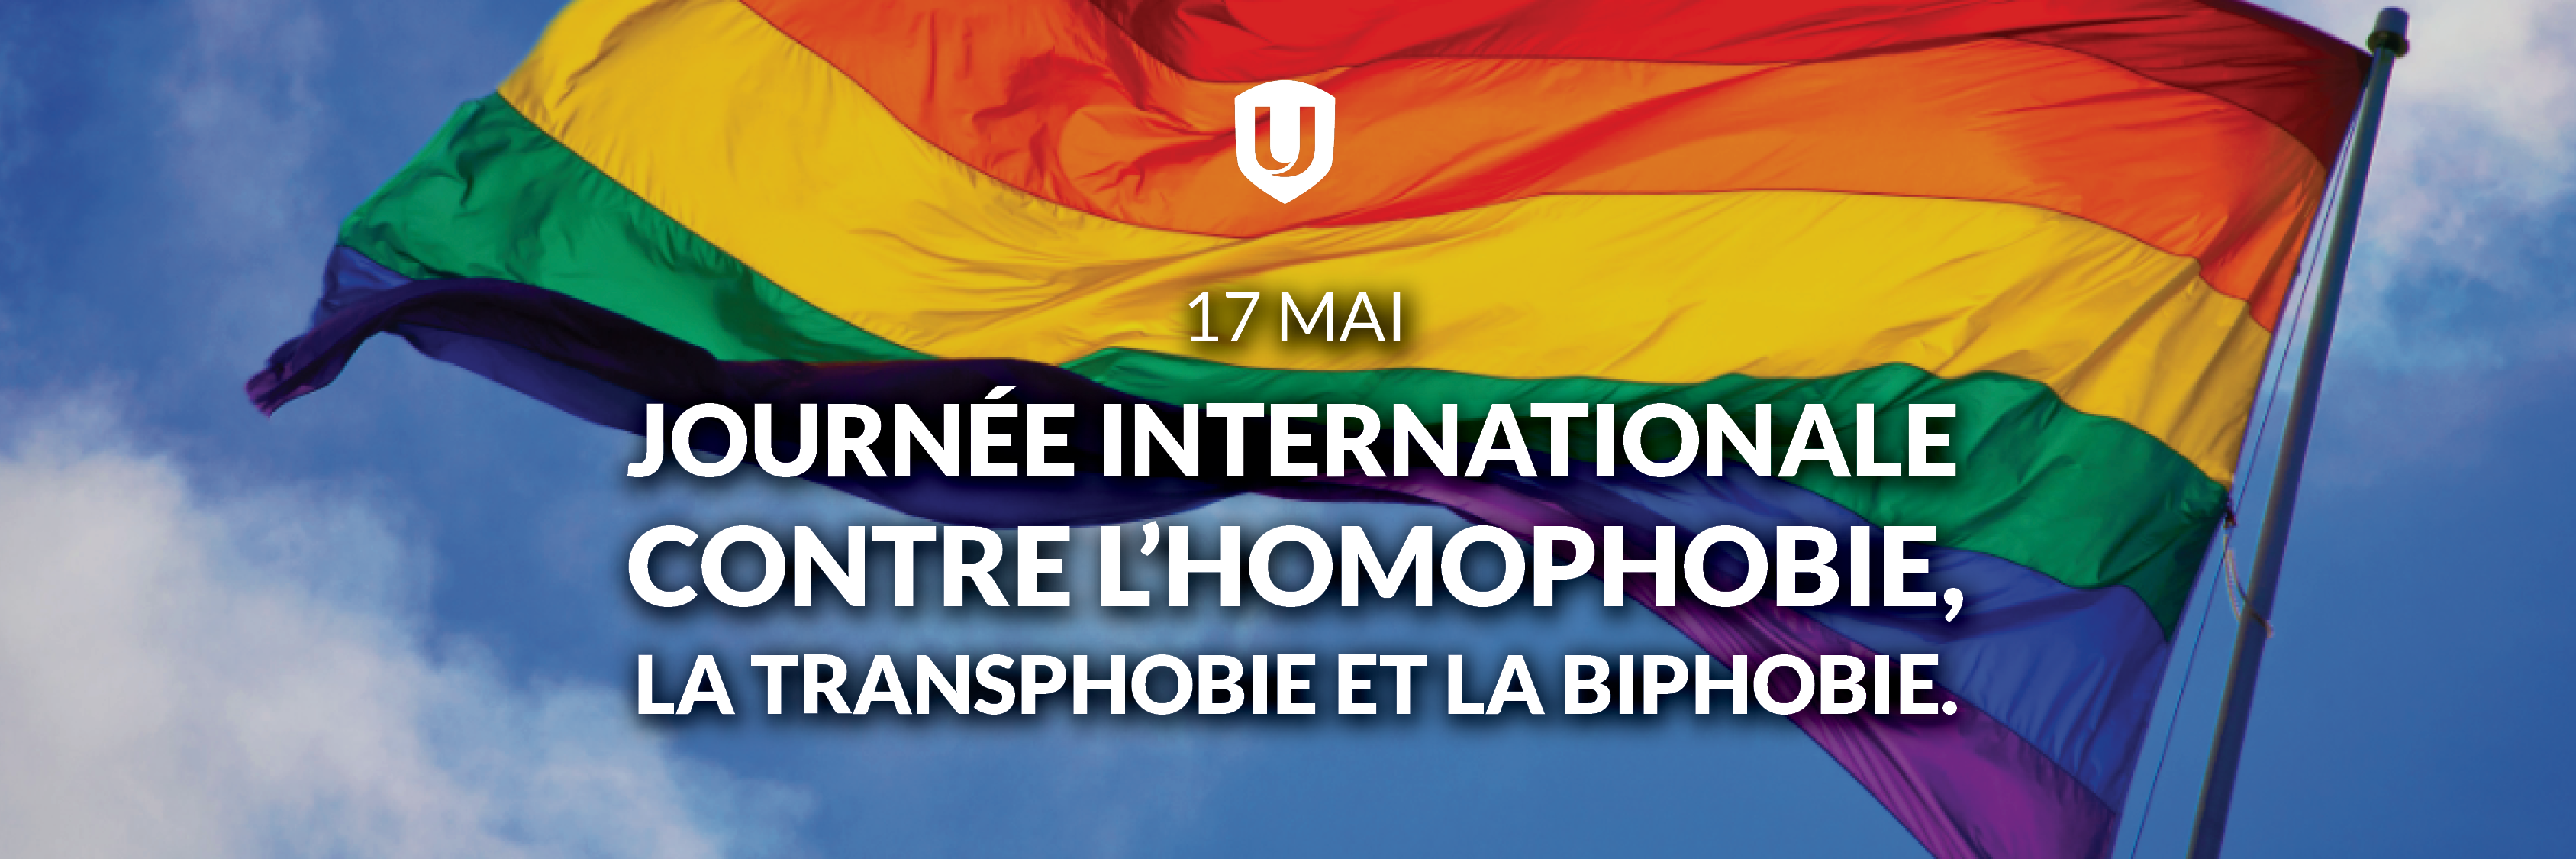 https://www.unifor.org/fr/ressources/nos-ressources/affiche-de-la-journee-internationale-contre-lhomophobie-la-transphobie-et